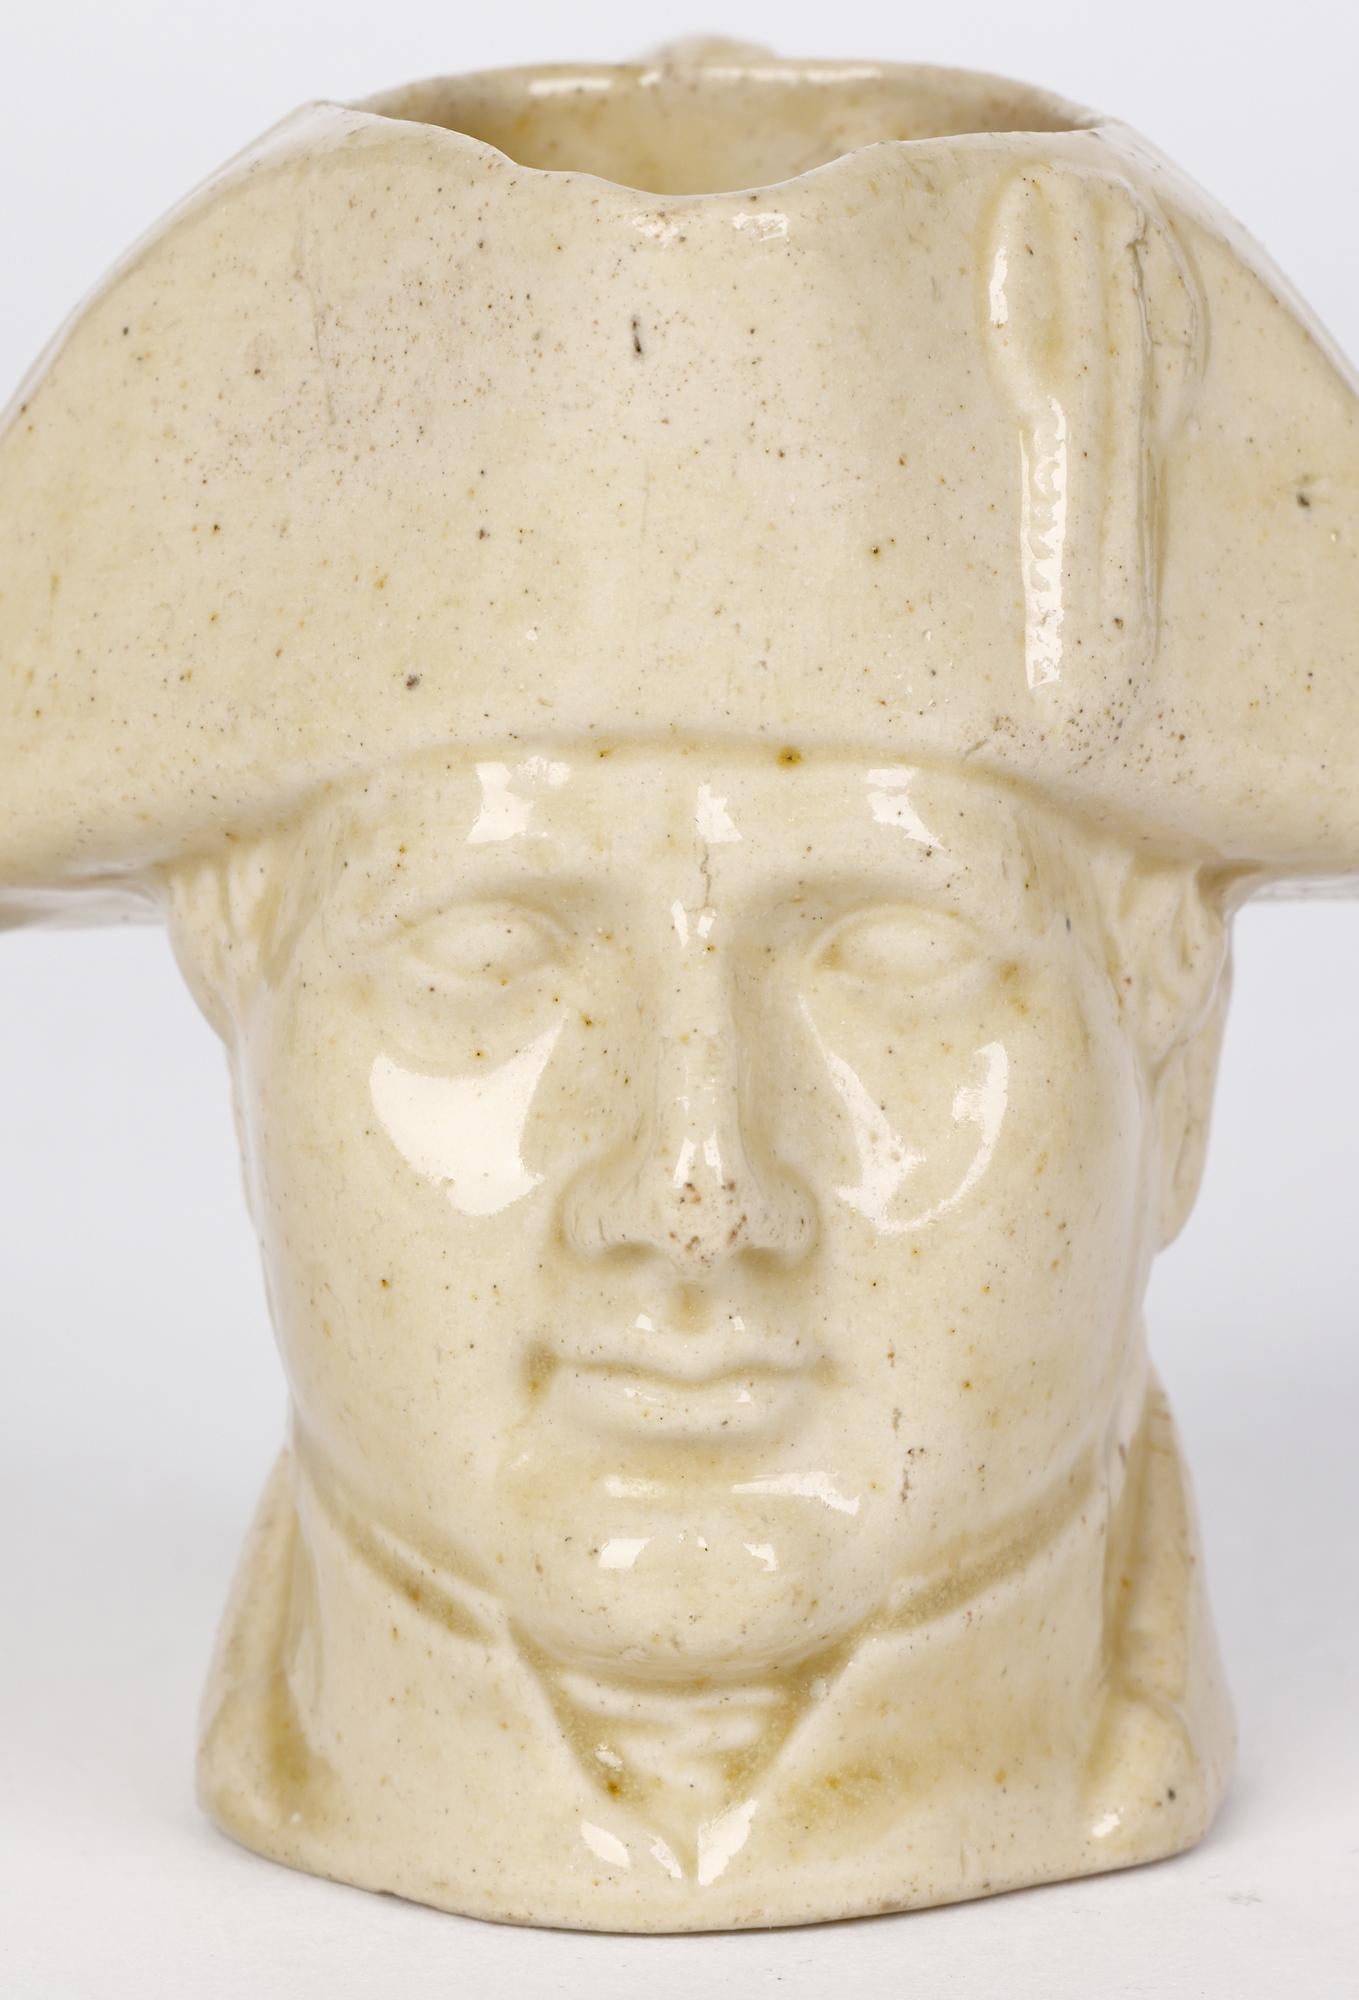 Seltener antiker Salzglasierter Milchkännchen aus frühem Steingut, modelliert als Büste Napoleons von Stephen Green, Lambeth, aus der Zeit um 1840. Dieser entzückende, kleine Krug ist mit dem Kopf von Napoleon modelliert, dessen Kragen den unteren